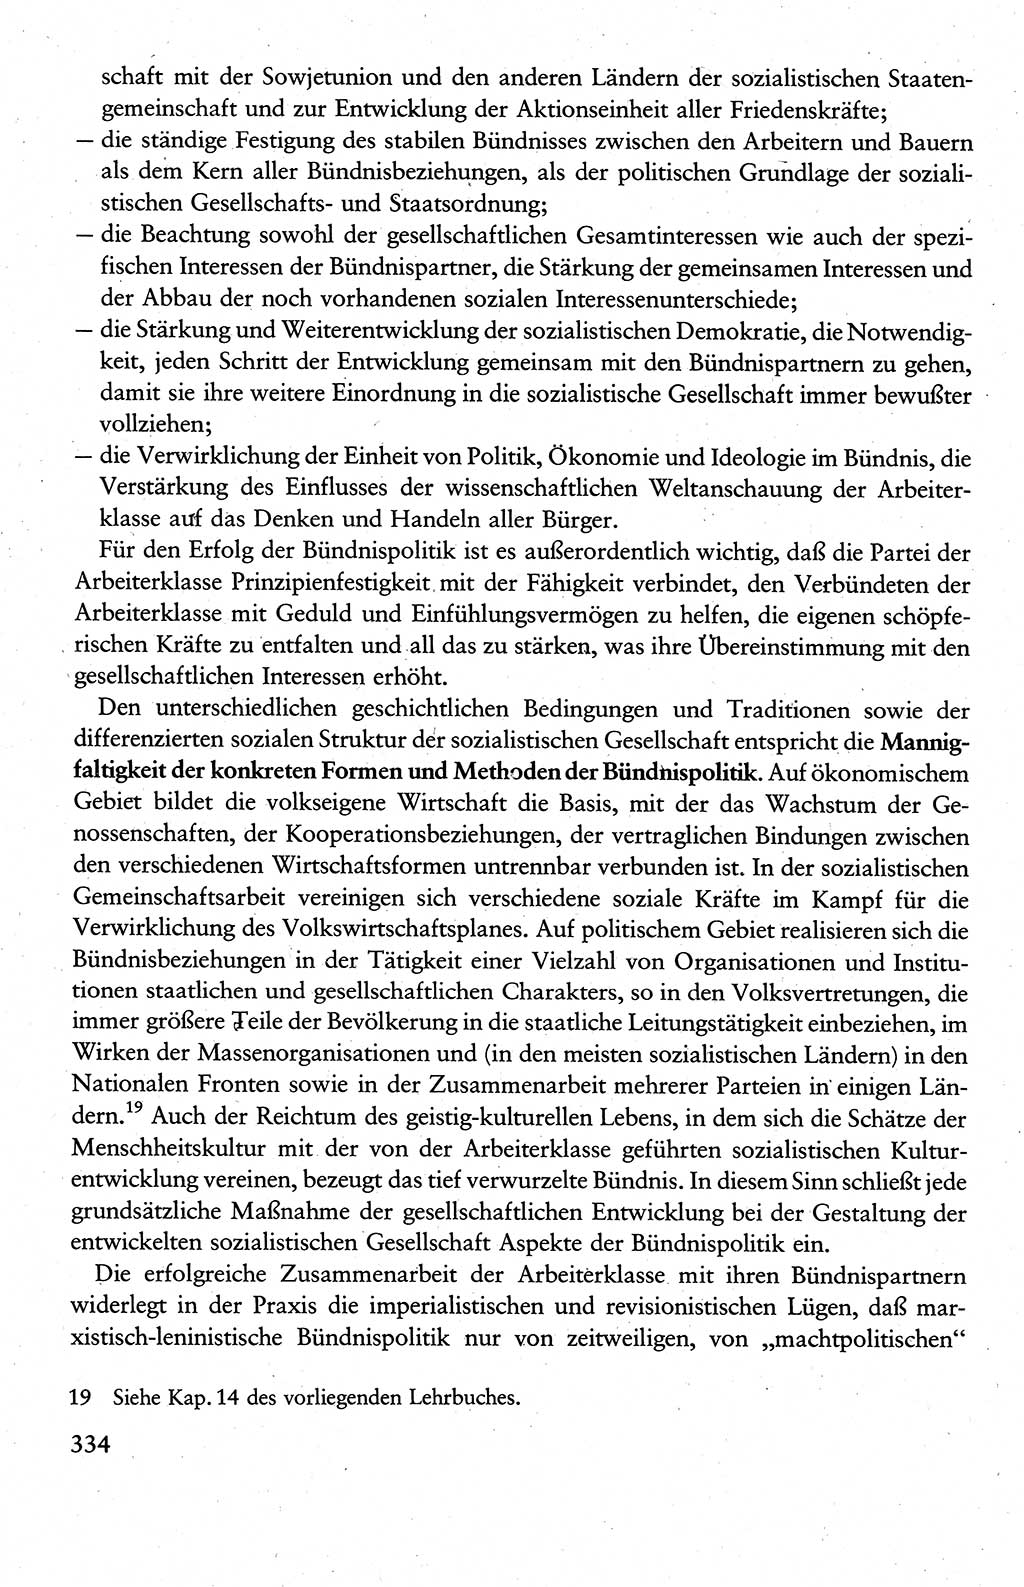 Wissenschaftlicher Kommunismus [Deutsche Demokratische Republik (DDR)], Lehrbuch für das marxistisch-leninistische Grundlagenstudium 1983, Seite 334 (Wiss. Komm. DDR Lb. 1983, S. 334)